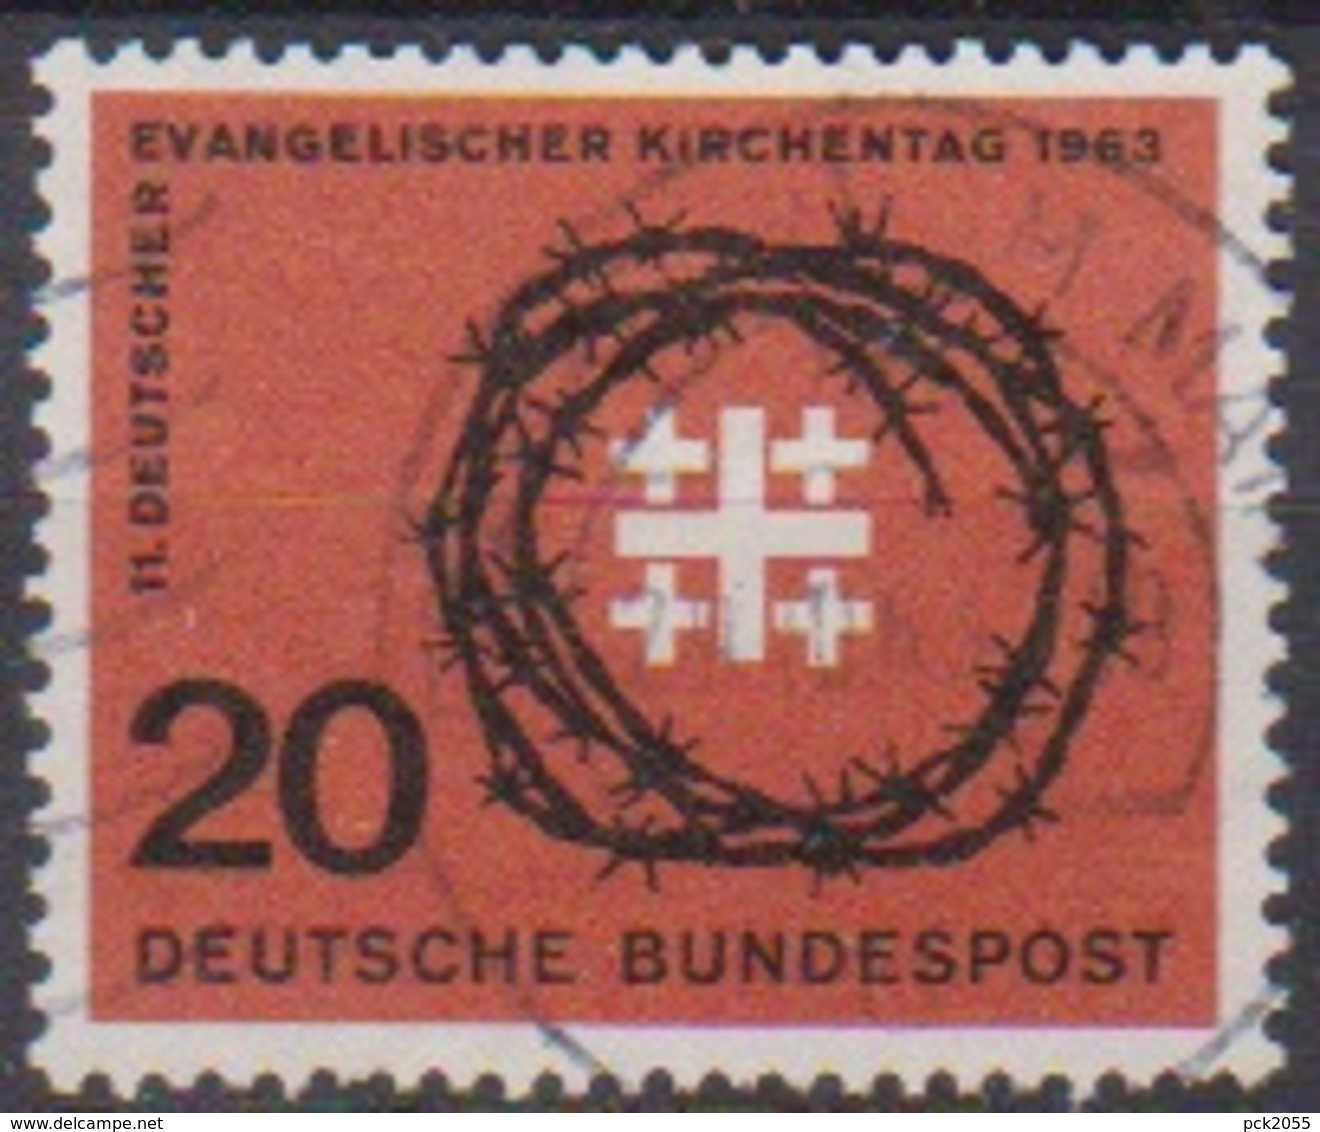 BRD 1963 MiNr.405 Deutscher Evangelischer Kirchentag ( A686 ) Günstige Versandkosten - Usati